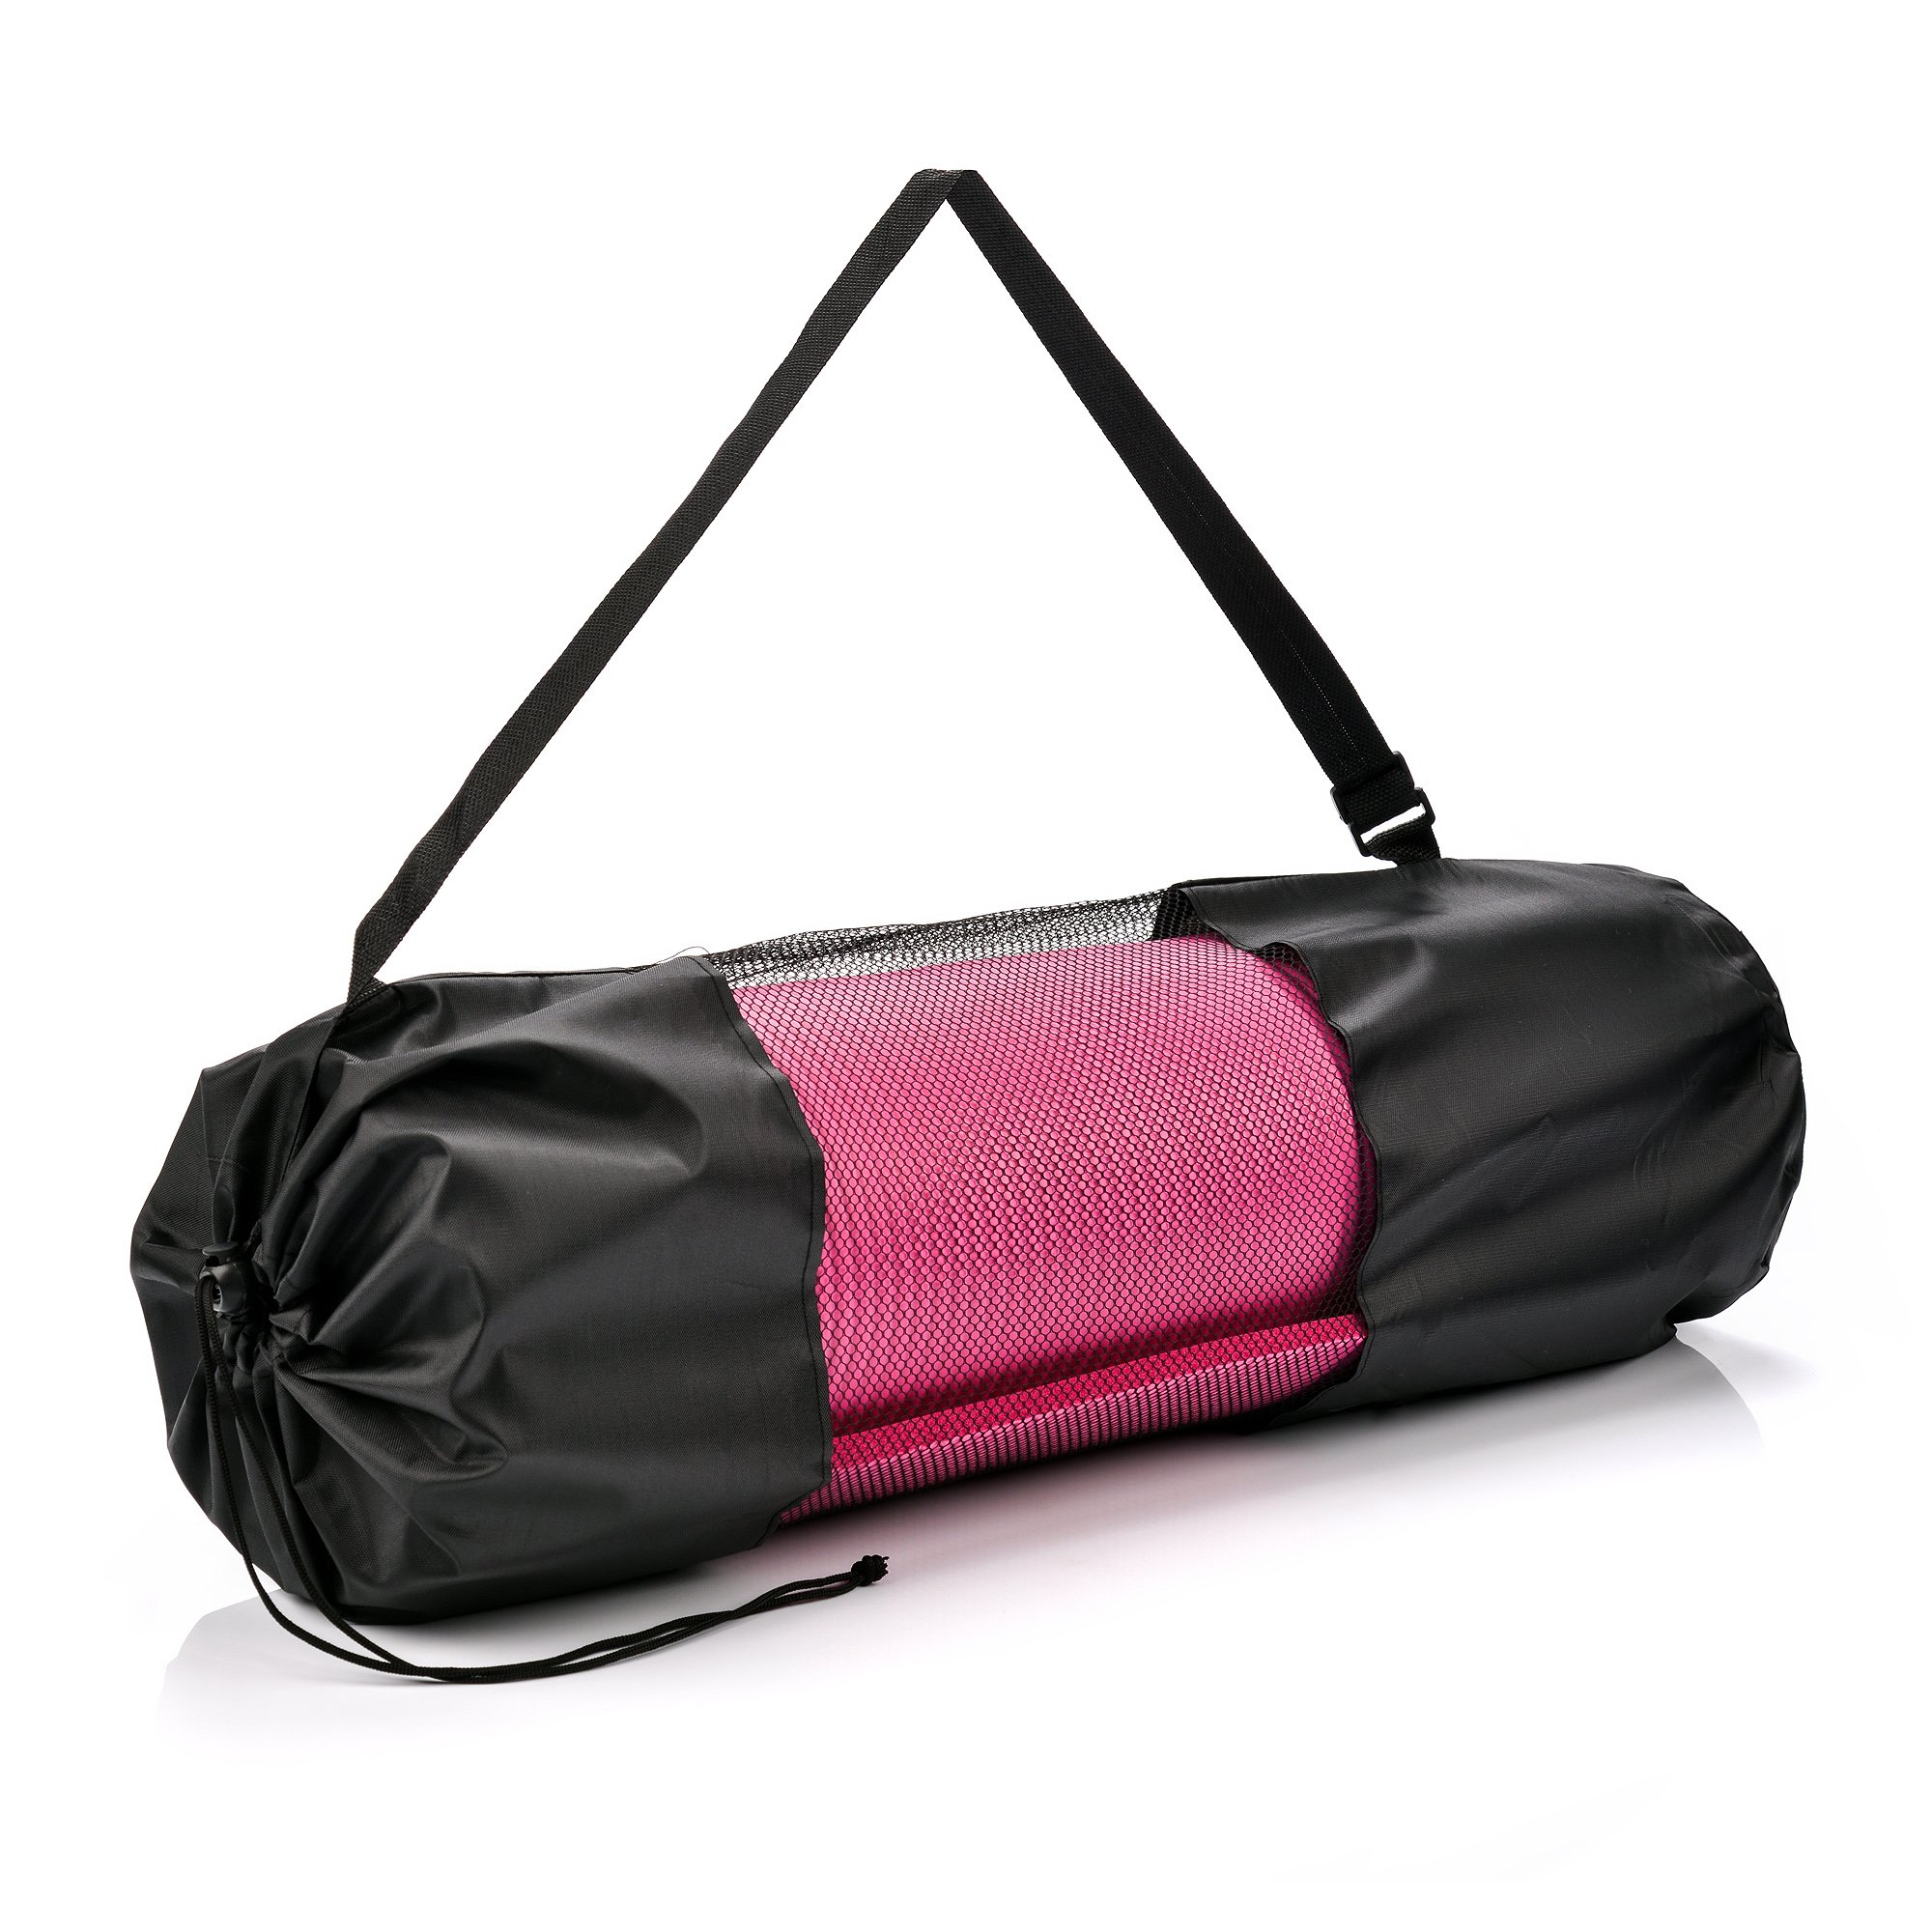 Yoga Mat Comprar, Yoga Mat Carry Bag